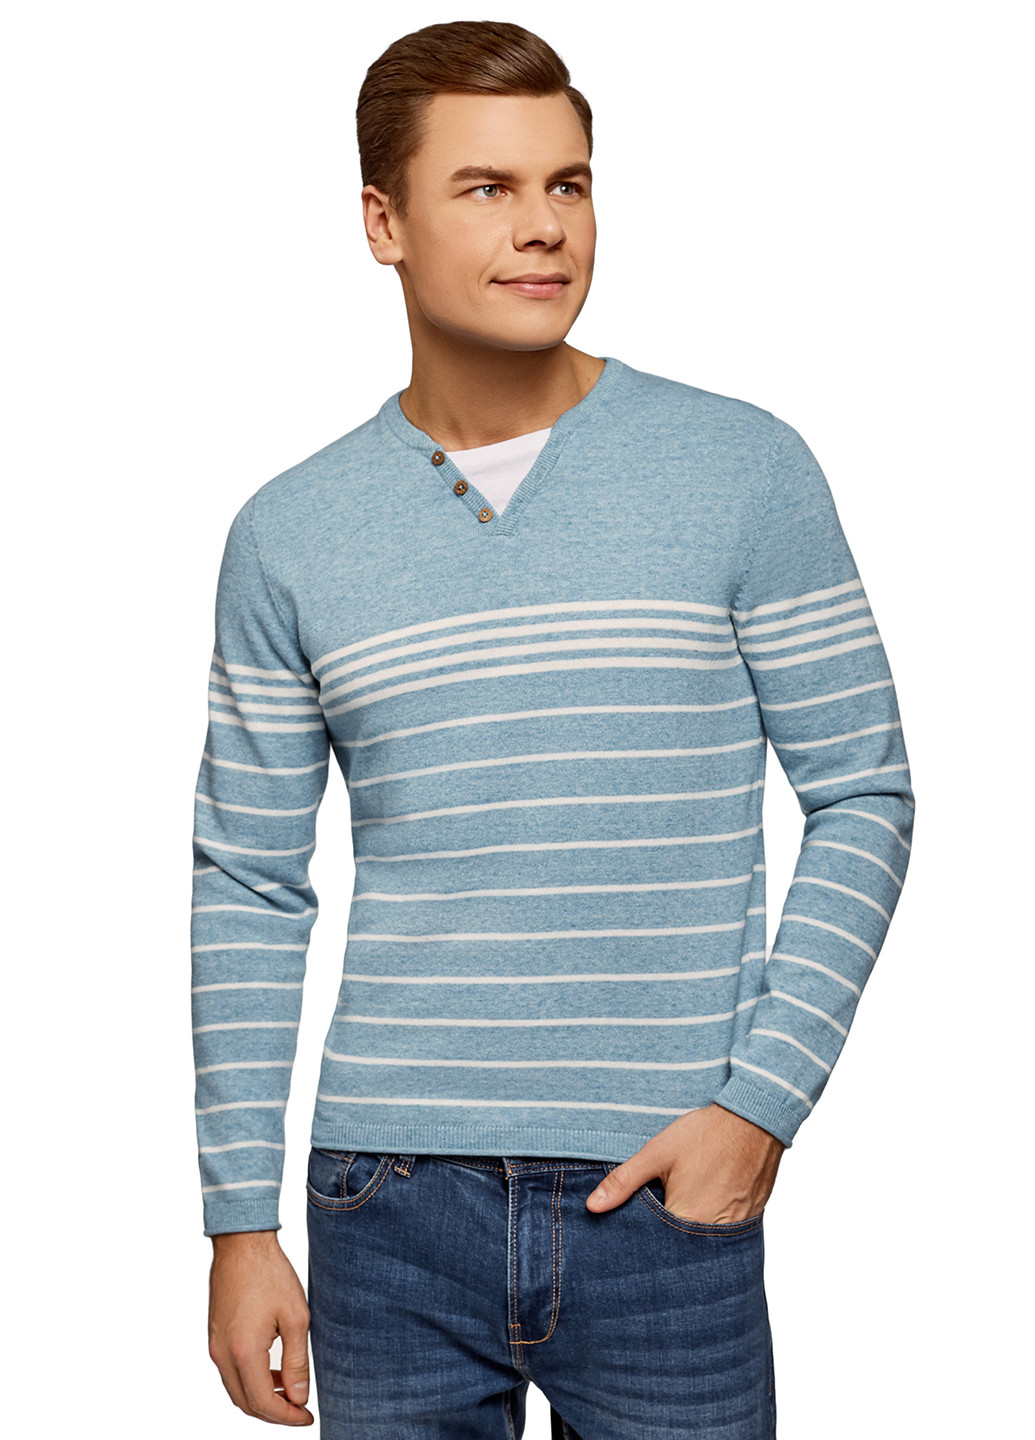 Светло-бирюзовый демисезонный пуловер пуловер Oodji